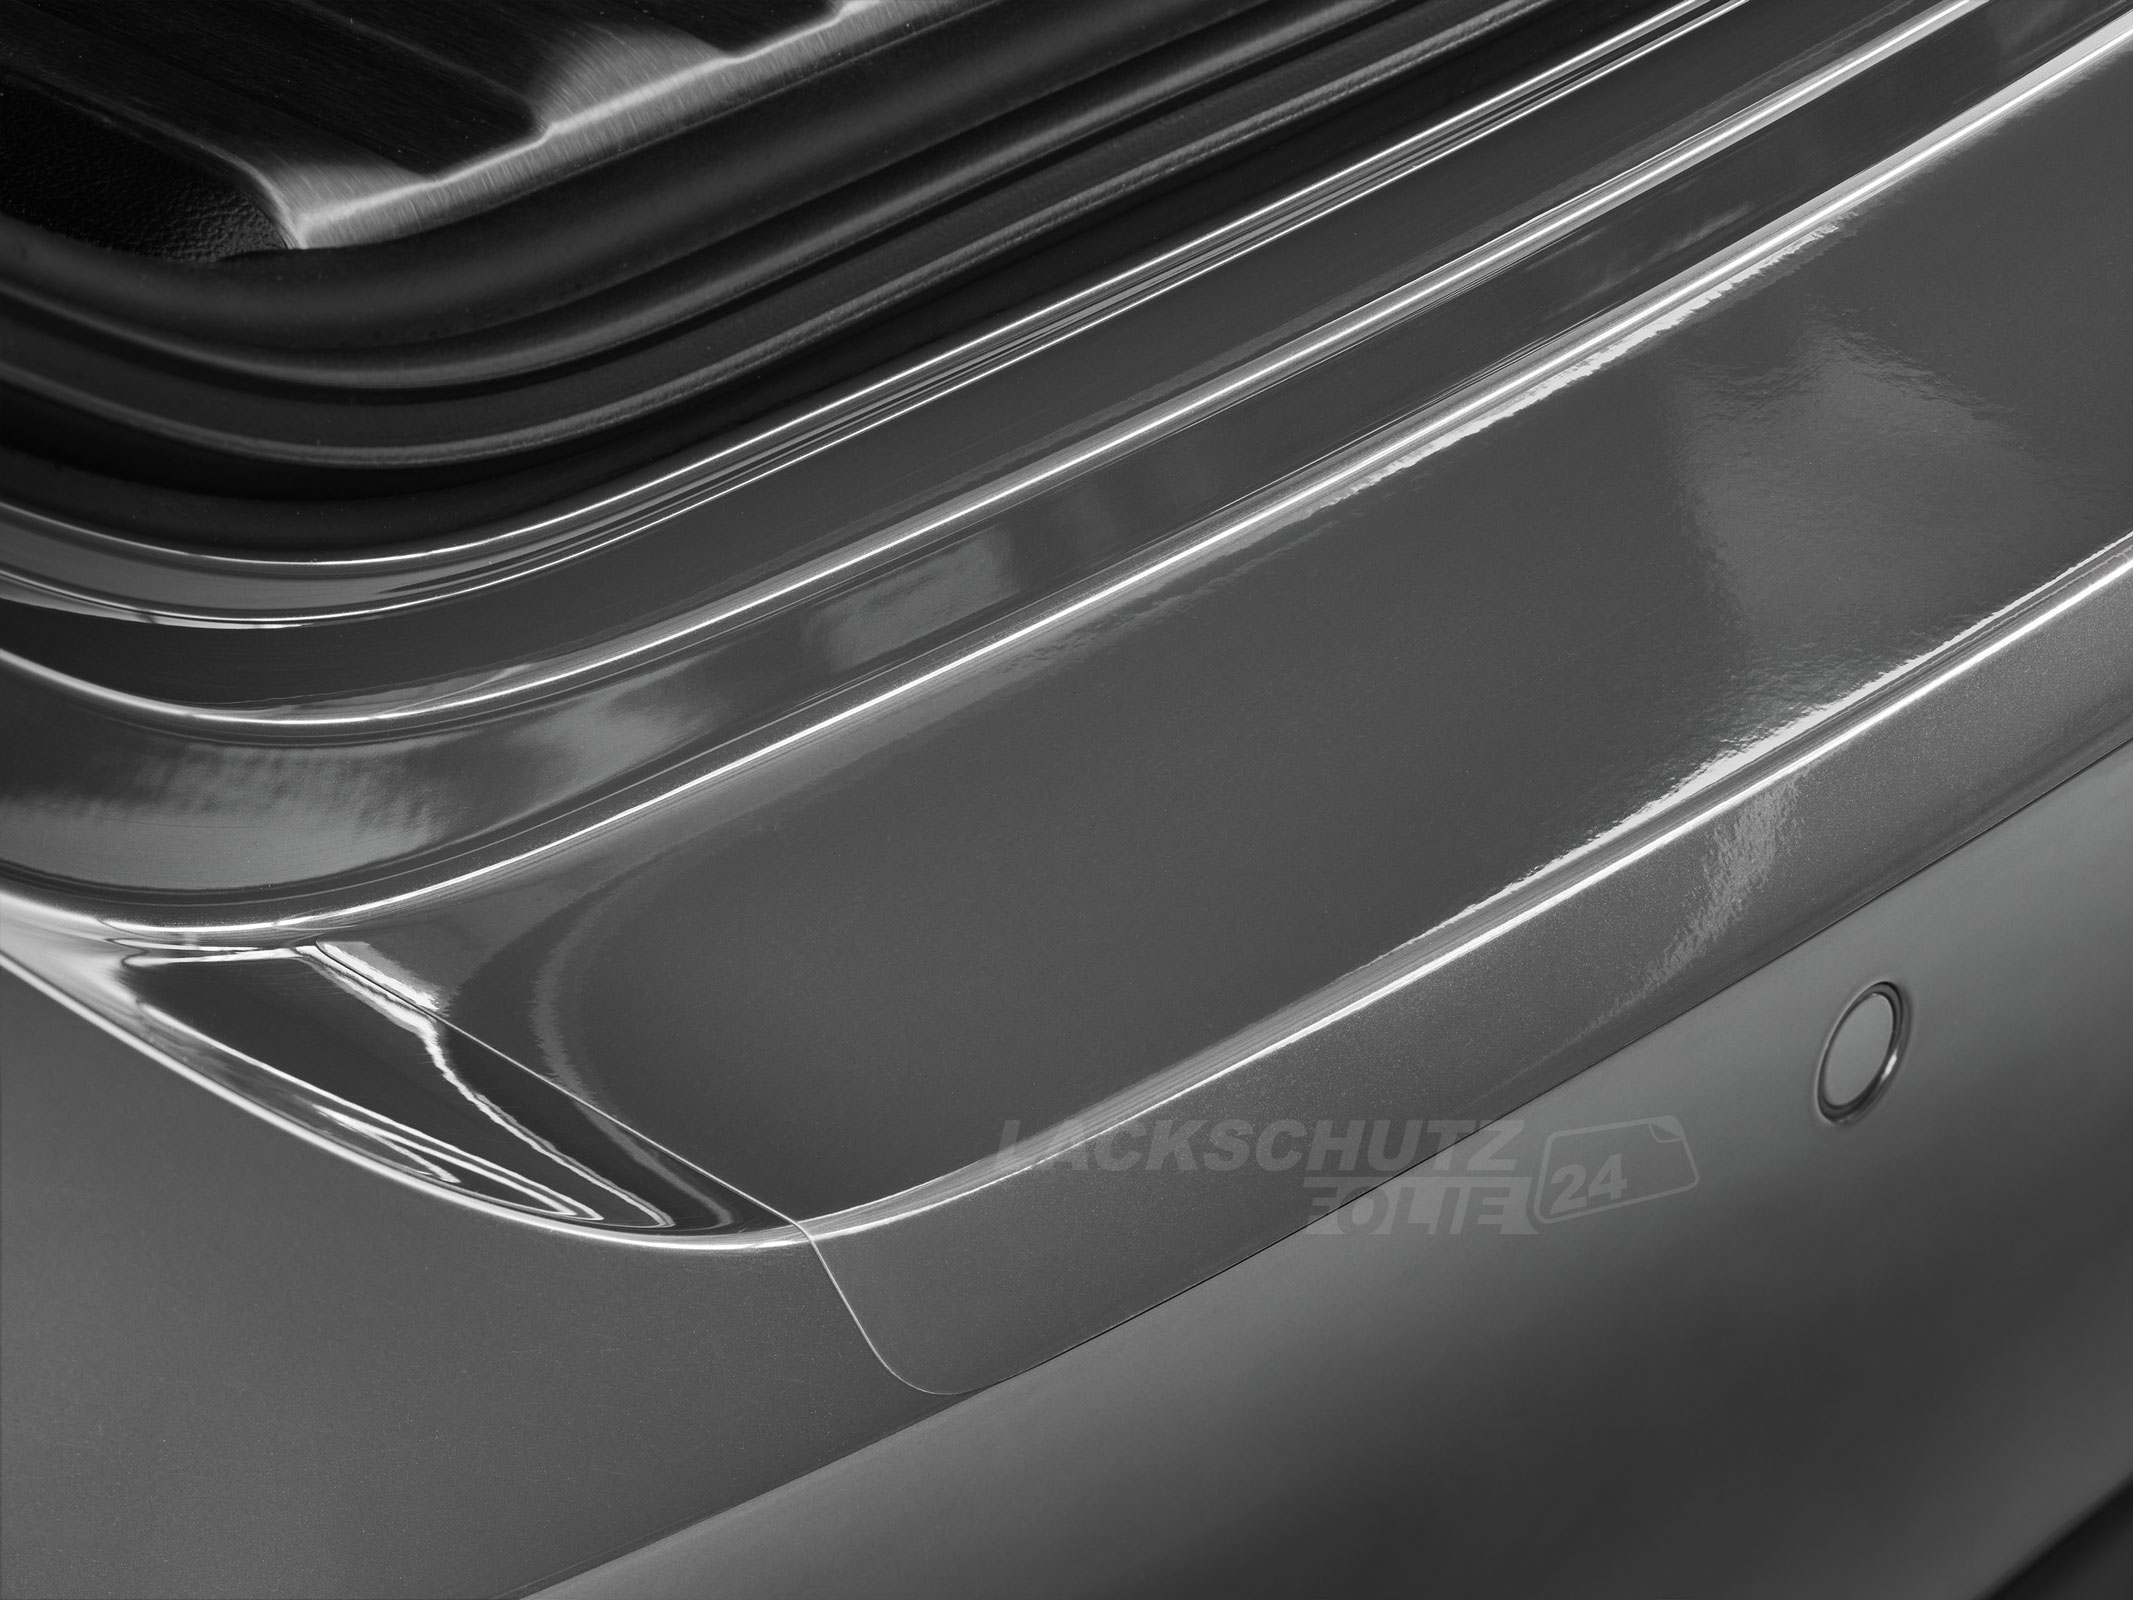 Ladekantenschutzfolie - Transparent Glatt Hochglänzend für Mazda 6 Limousine (III) Typ GJ, ab BJ 10/2012 + Facelift